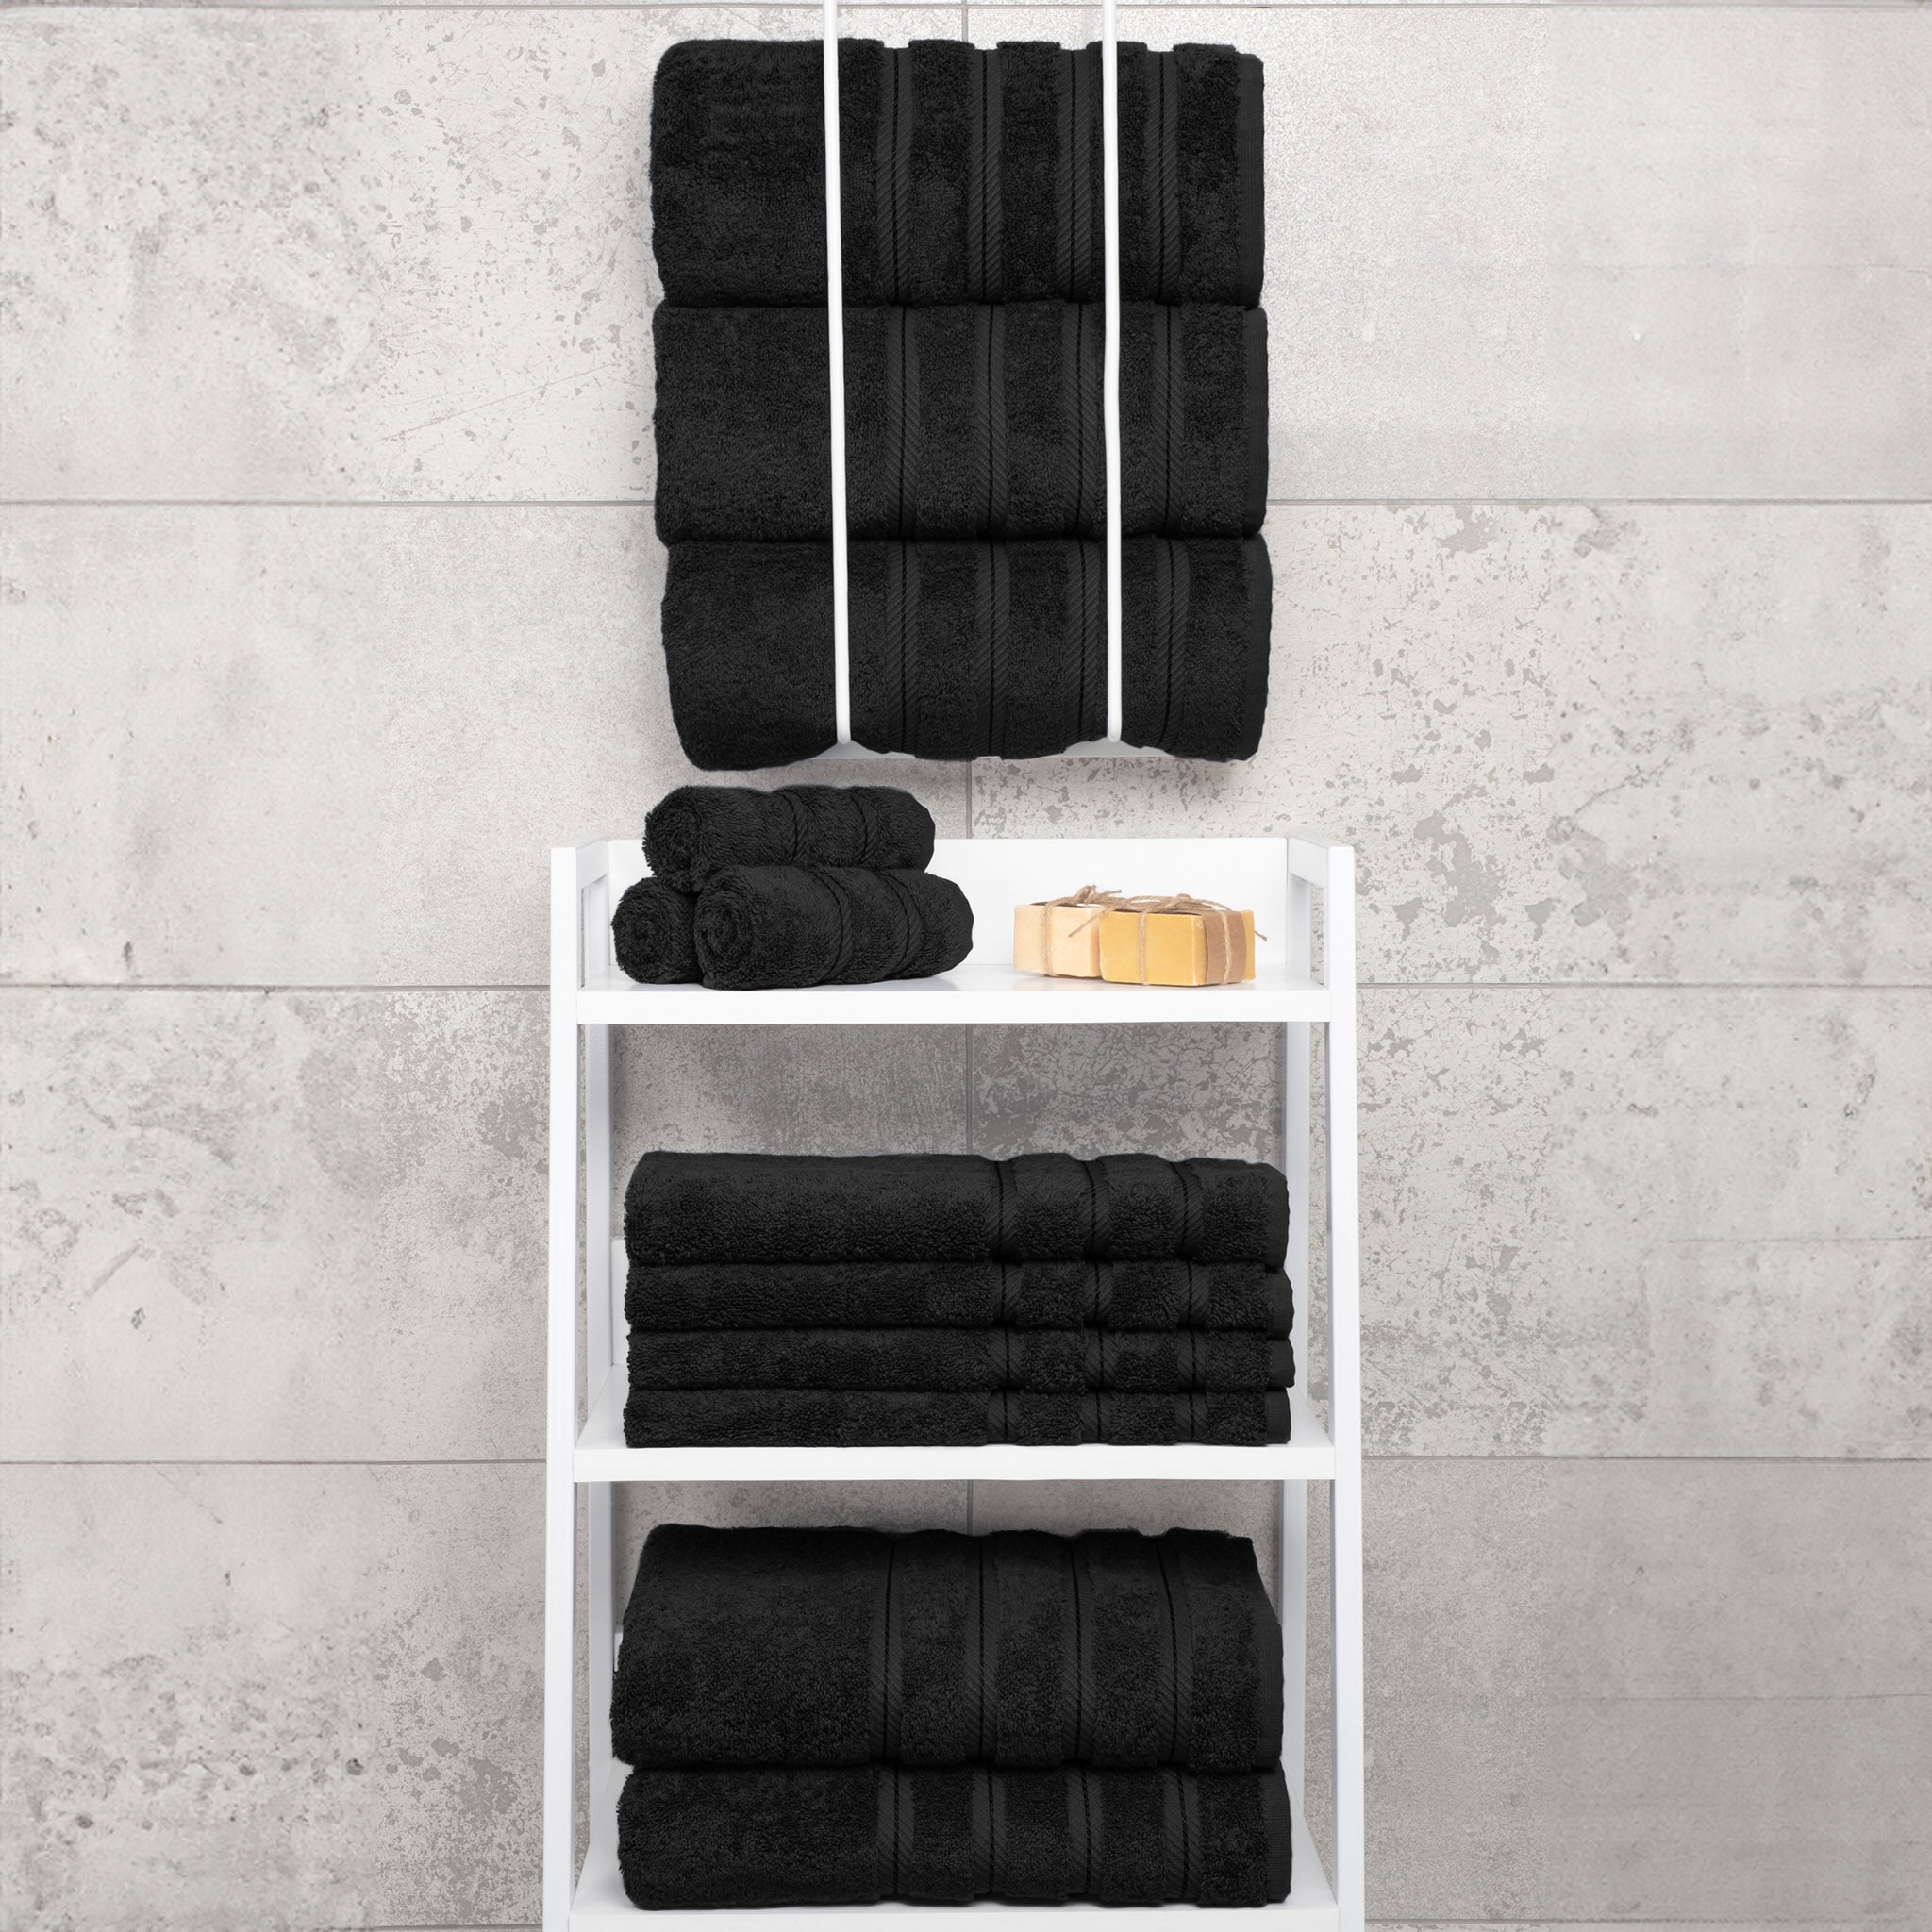 American Soft Linen 100% Turkish Cotton 4 Pack Bath Towel Set Wholesale black-7